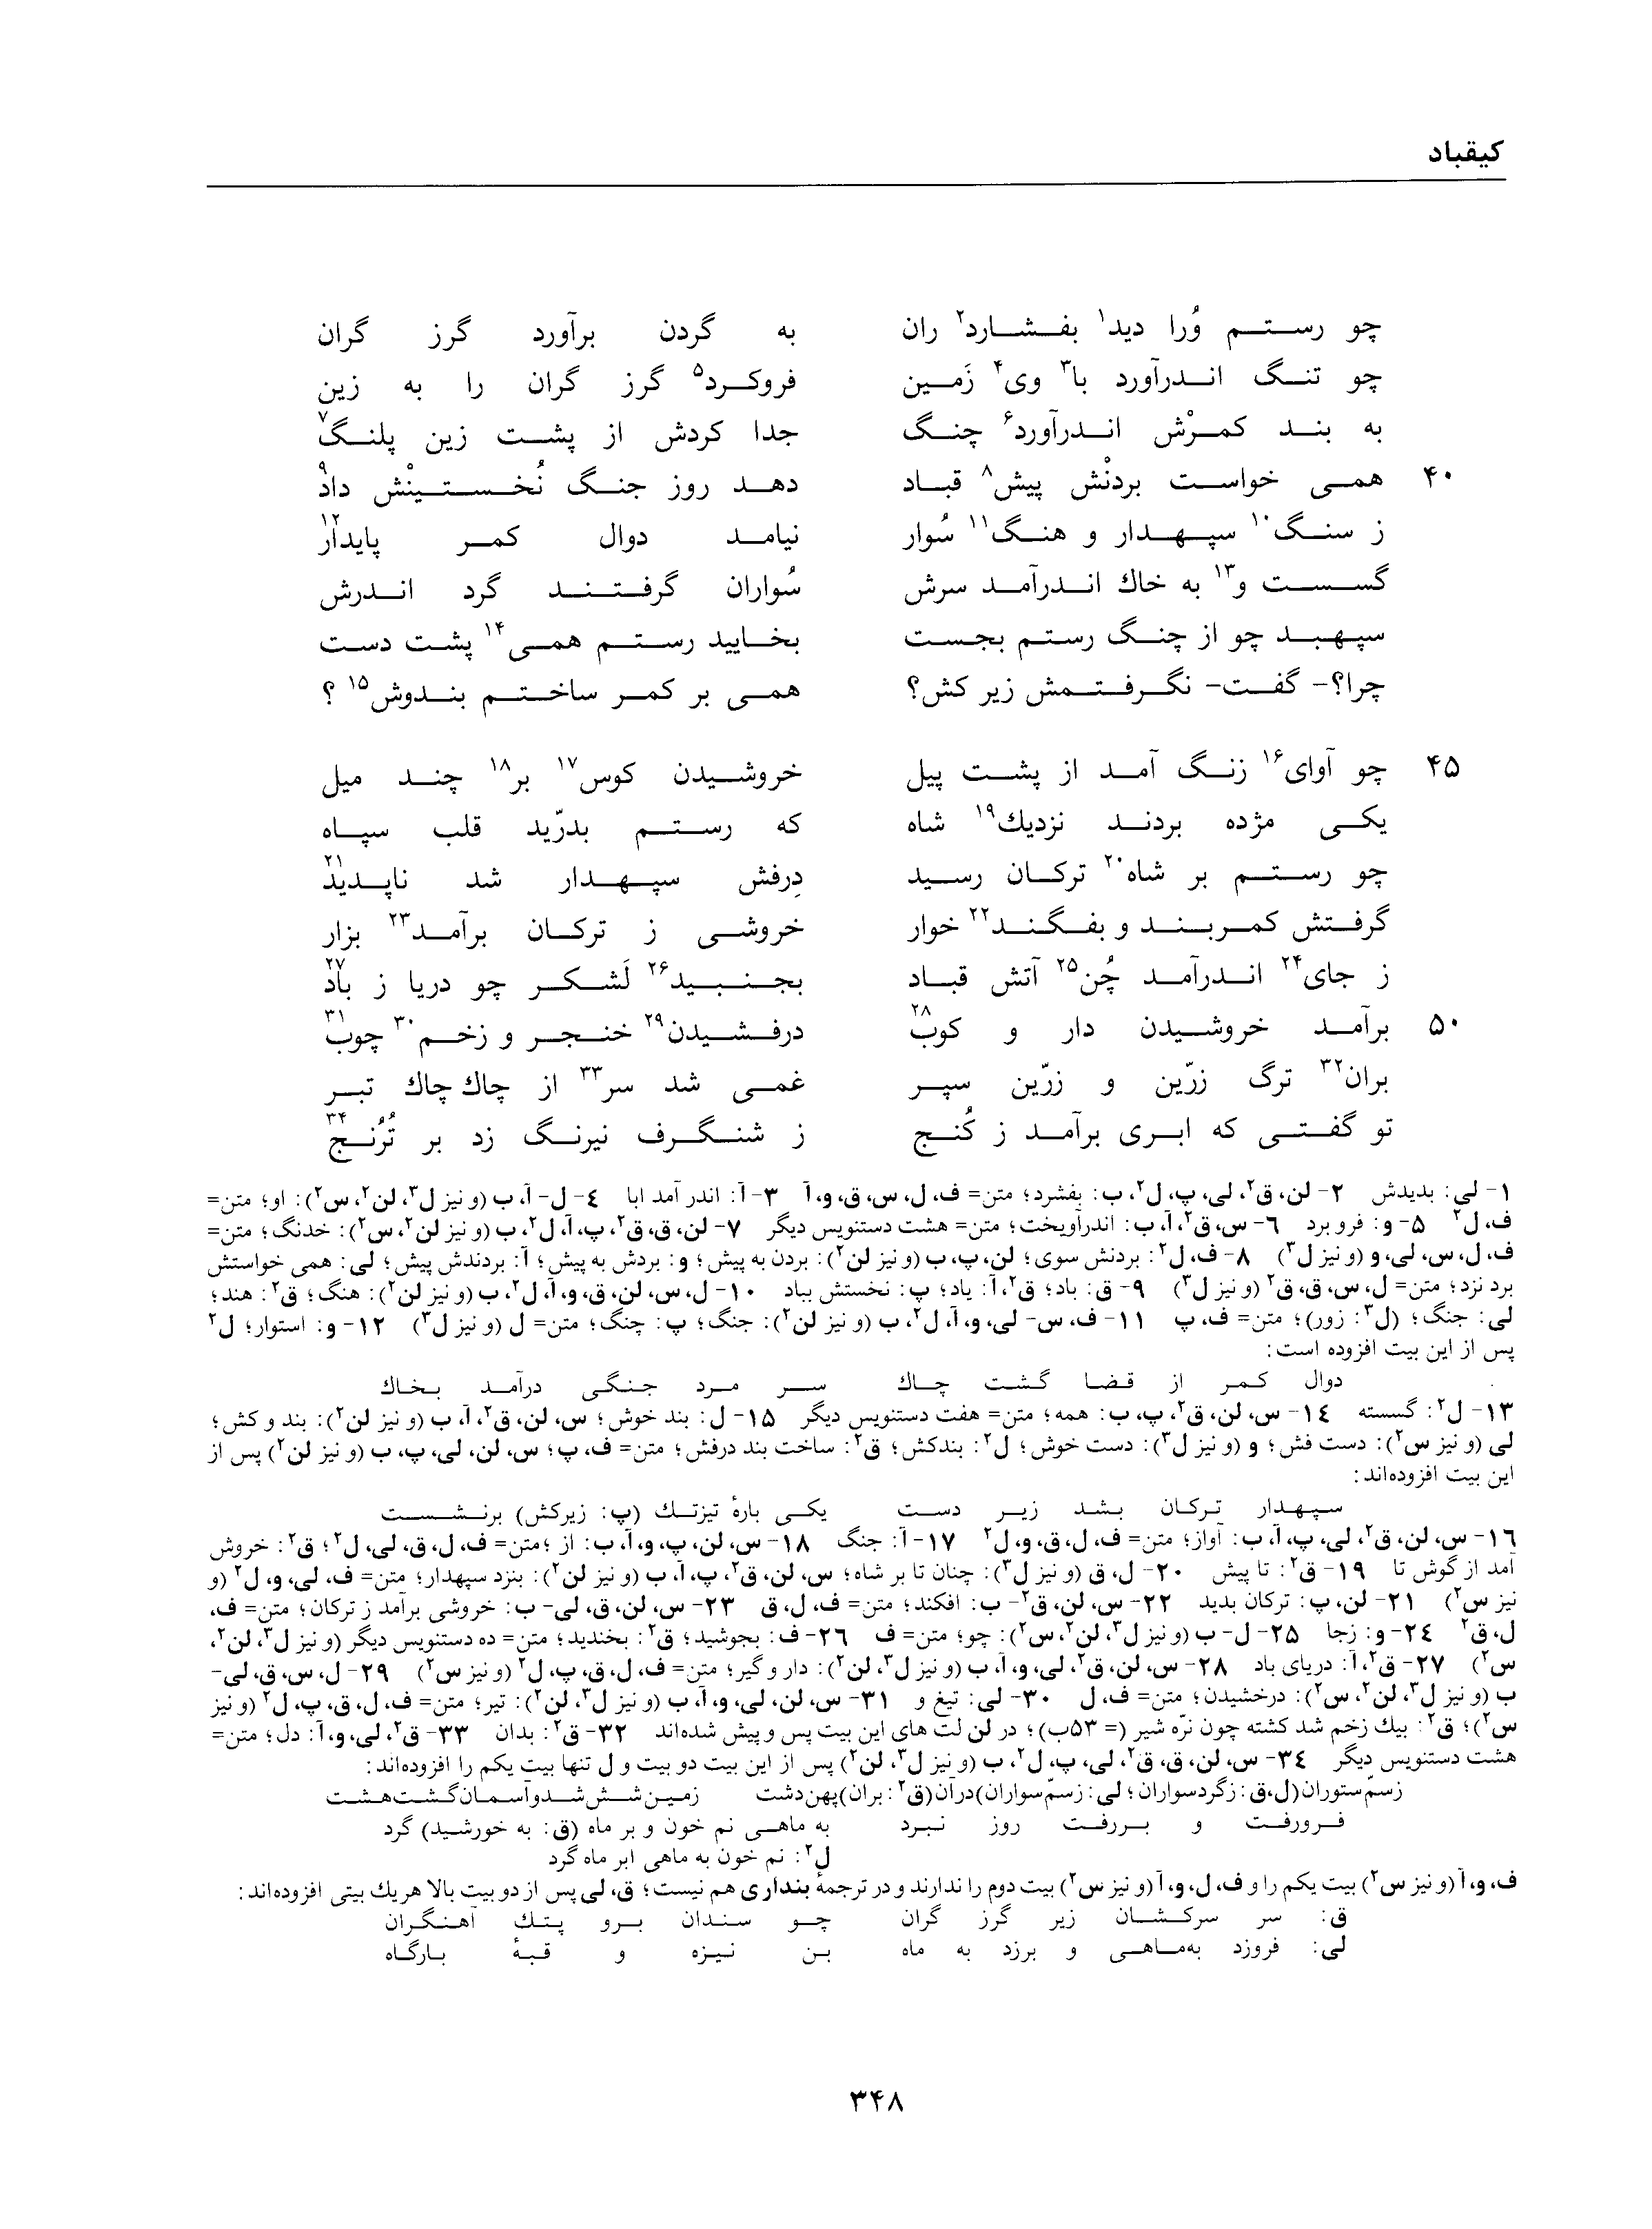 vol. 1, p. 348